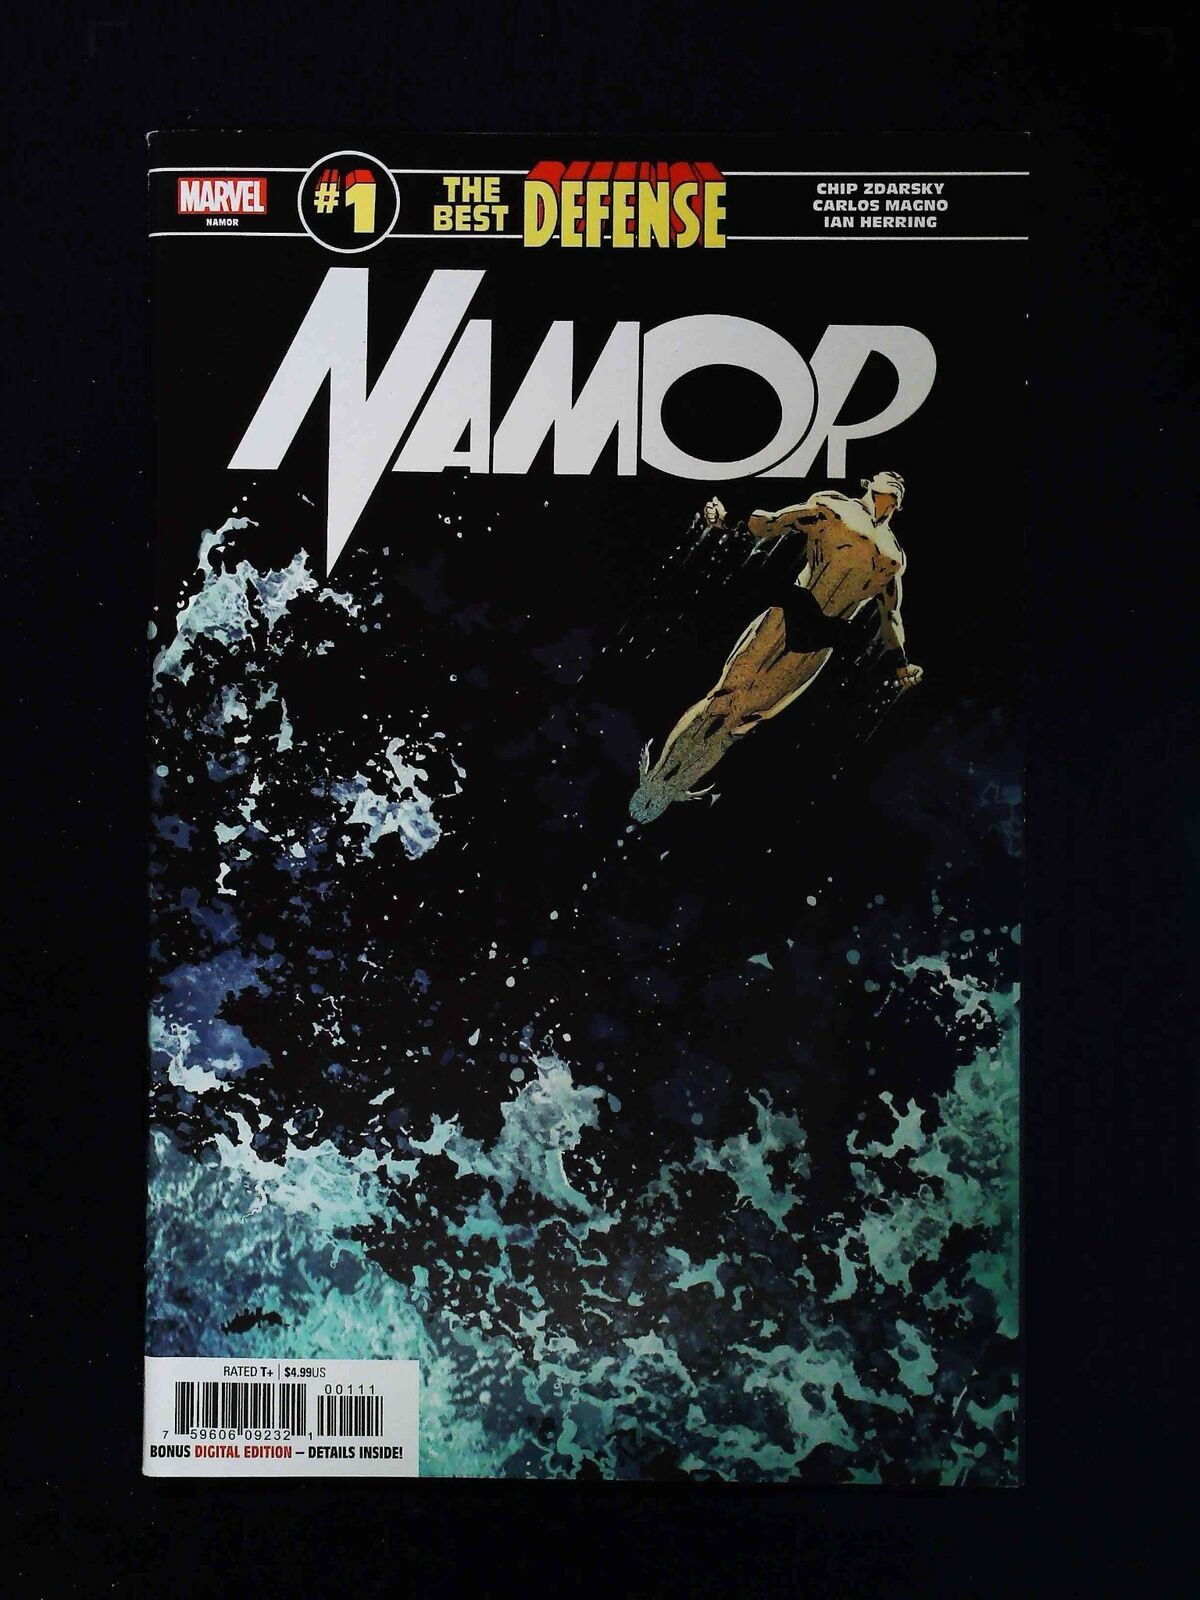 Namor: The Best Deefnder  #1  Marvel Comics 2019 Vf+